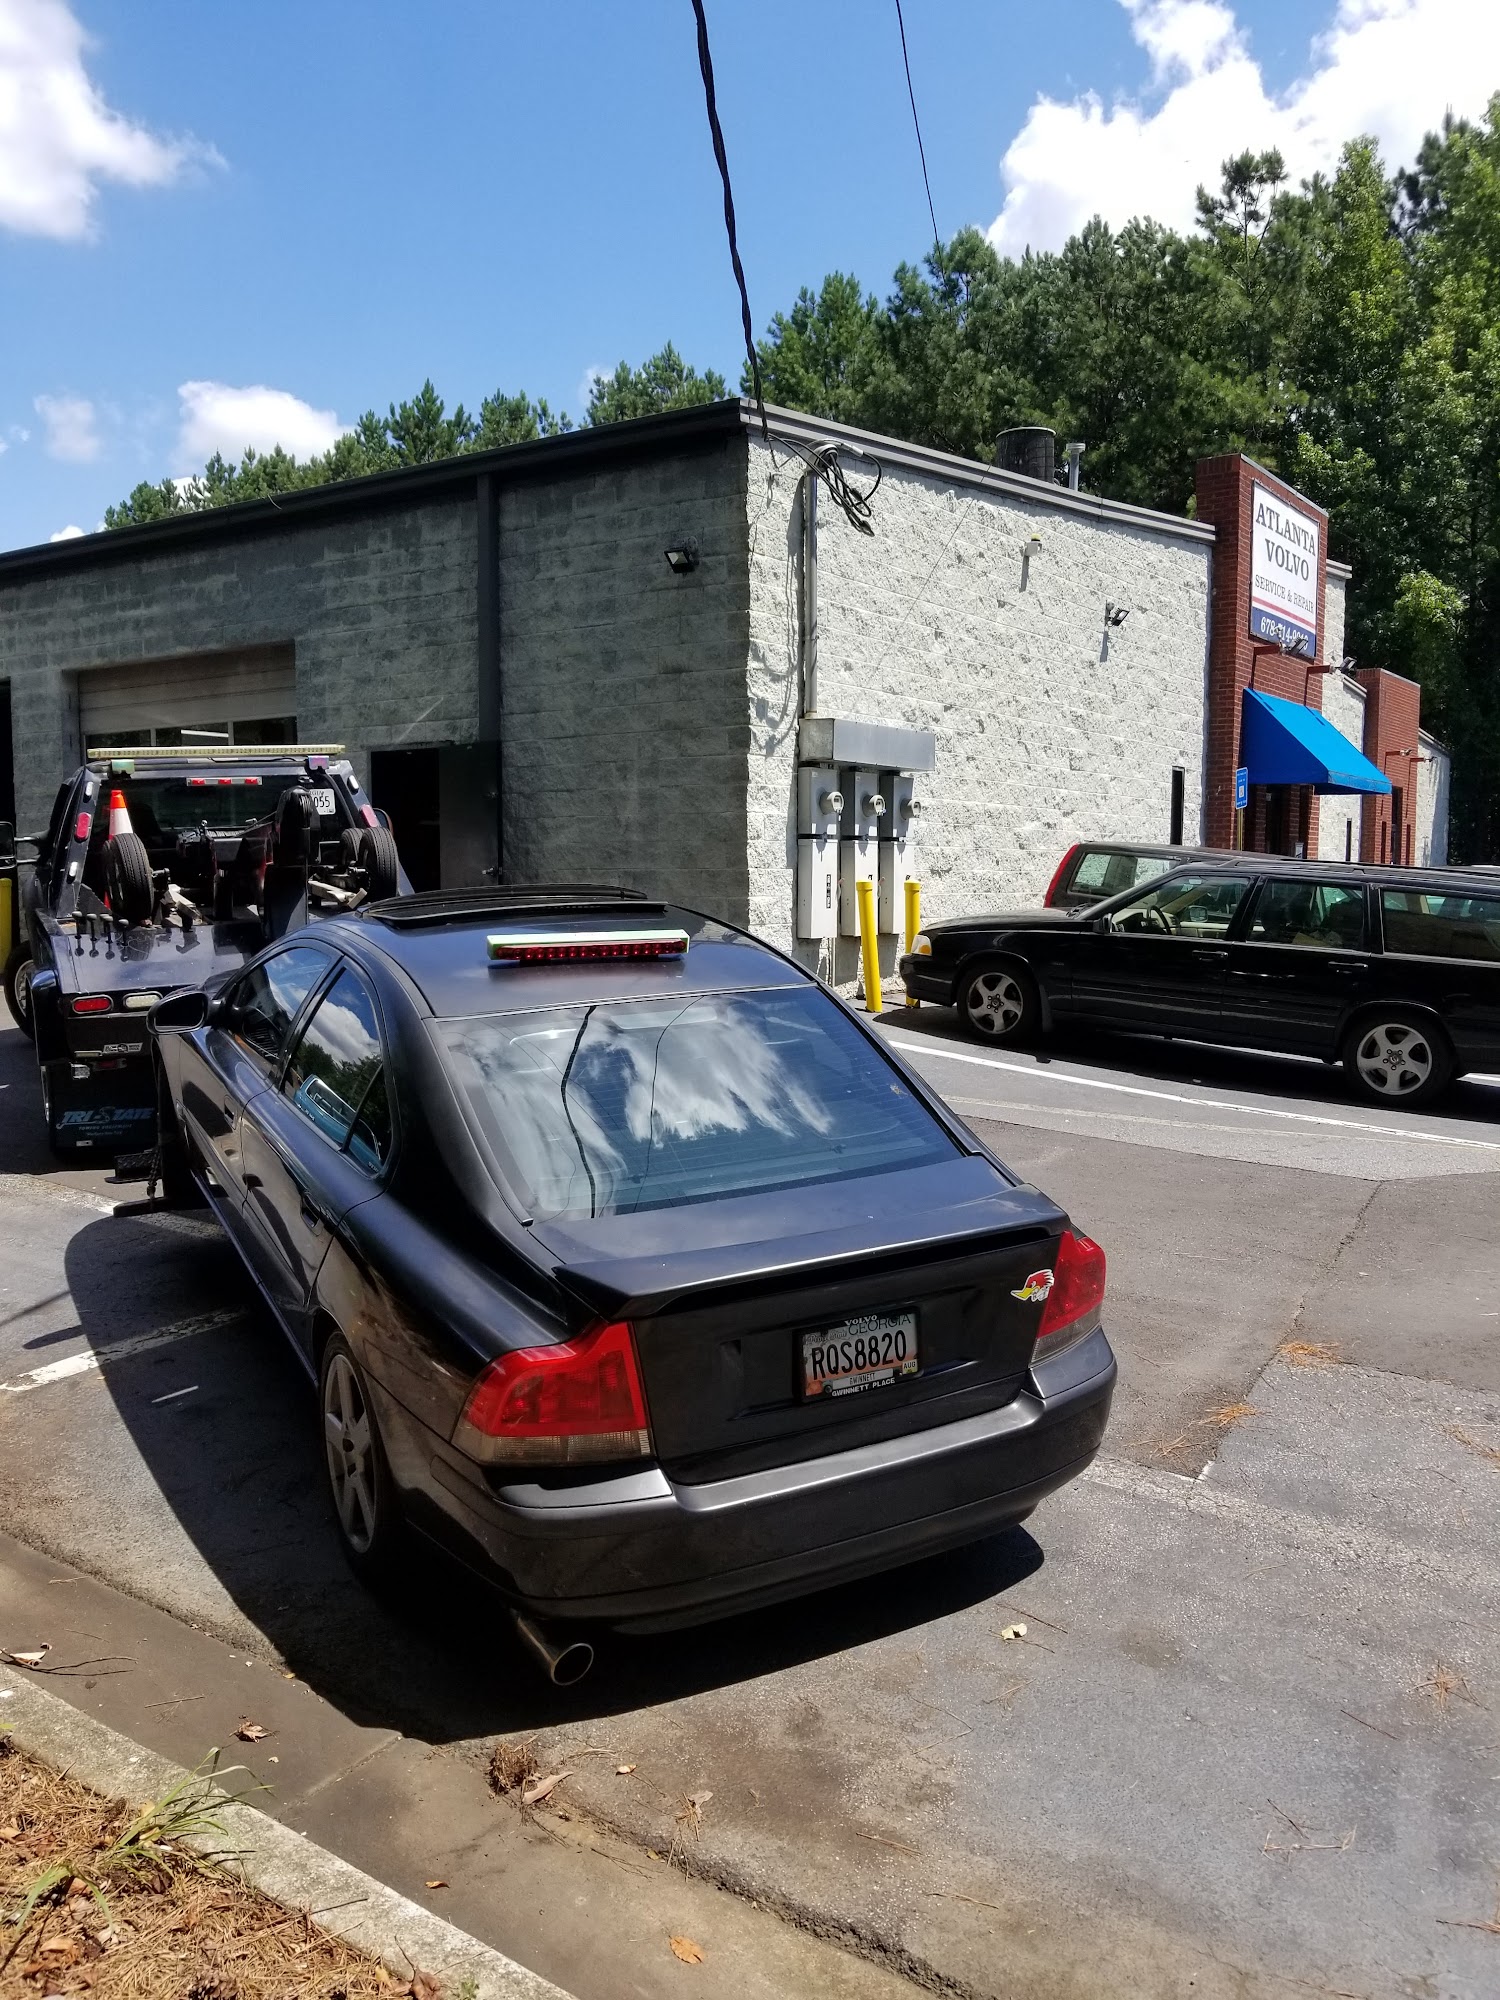 Atlanta Volvo Service and Repair